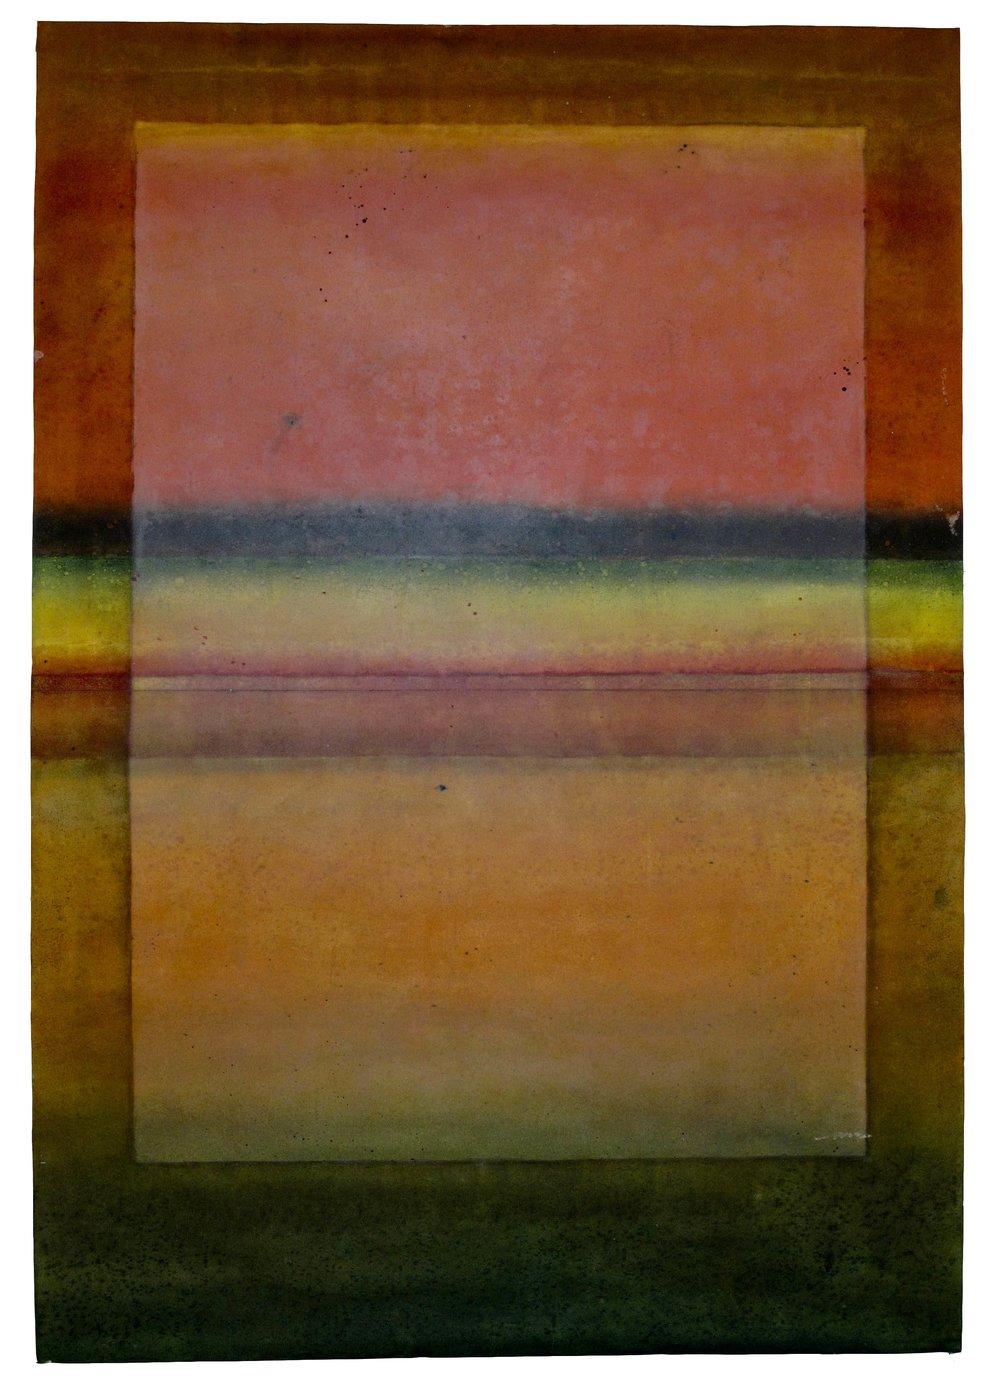 Abstract Painting Elvire Ferle - Untitled LXVI par Ferle - Grande peinture abstraite, rouge et orange, colorée